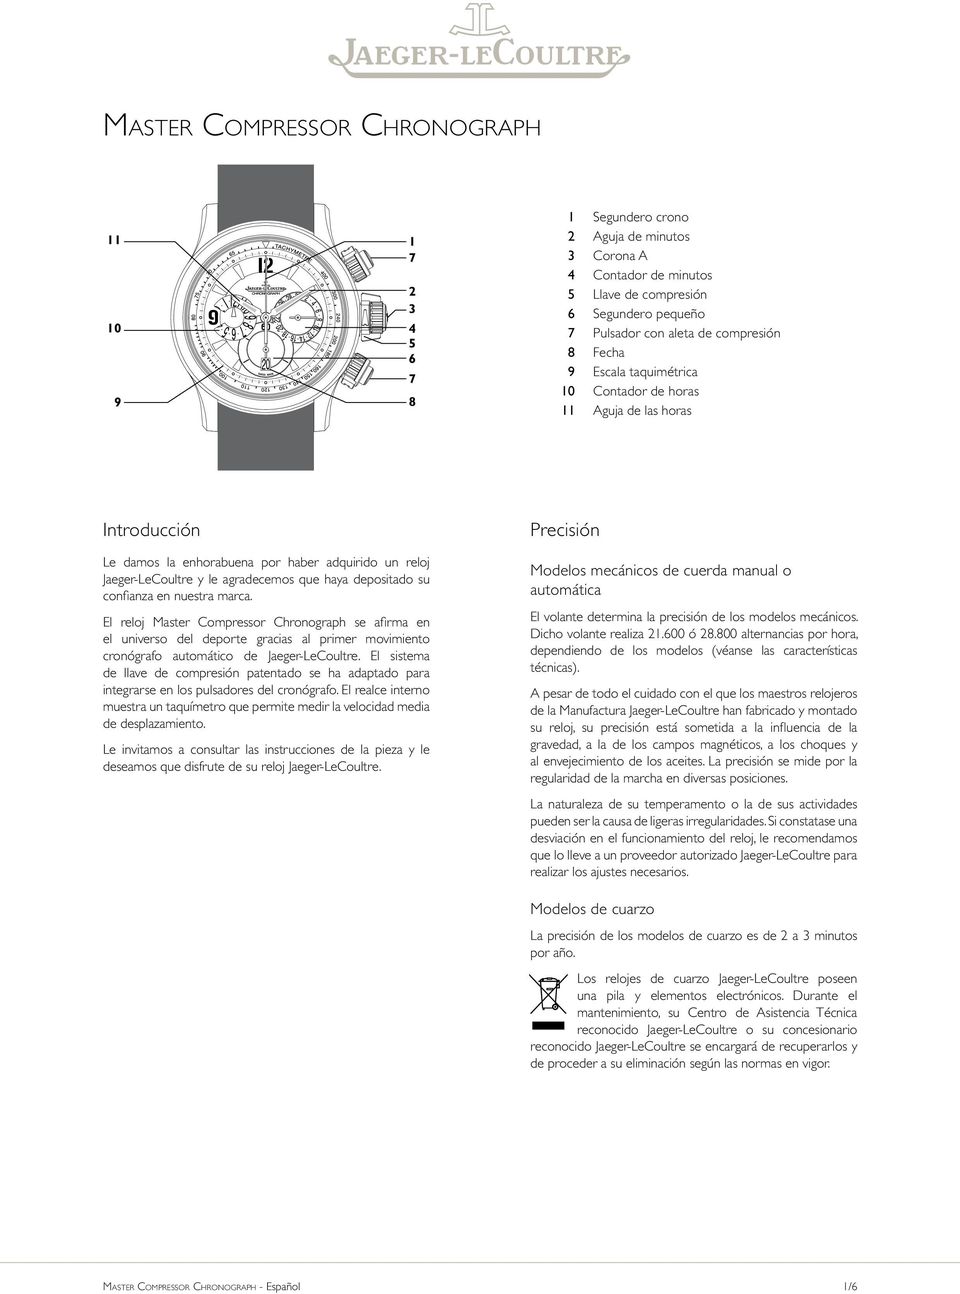 haya depositado su confianza en nuestra marca. El reloj Master Compressor Chronograph se afirma en el universo del deporte gracias al primer movimiento cronógrafo automático de Jaeger-LeCoultre.